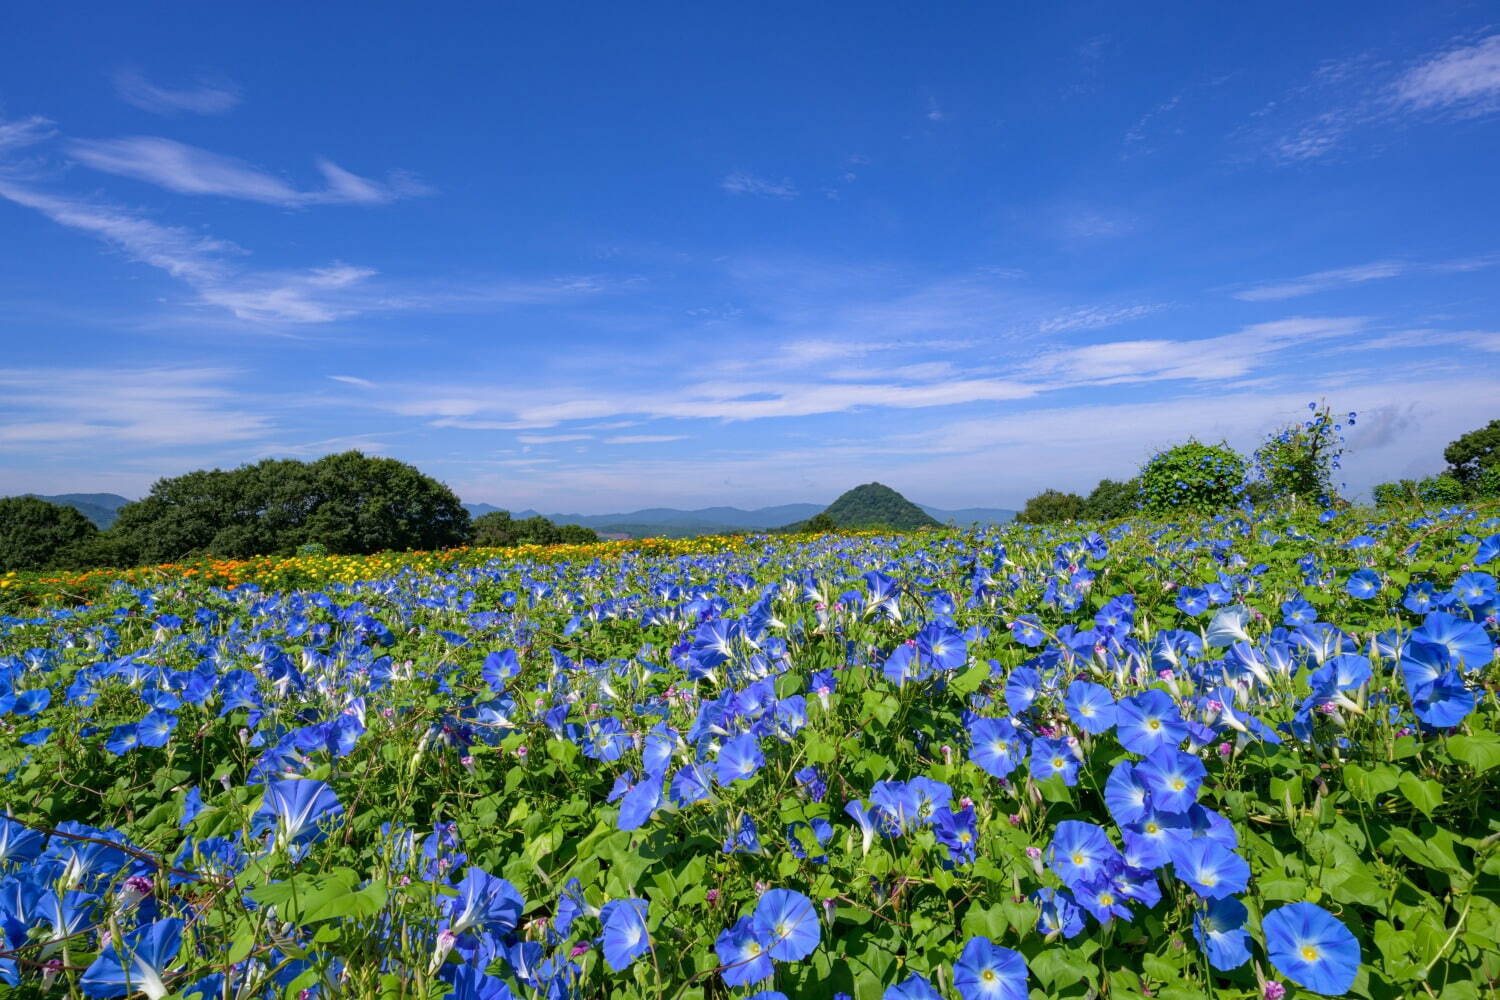 広島・フラワーヴィレッジ 花夢の里「ヘブンリーブルーの丘」14万輪の西洋アサガオが咲き誇る夏イベント｜写真8